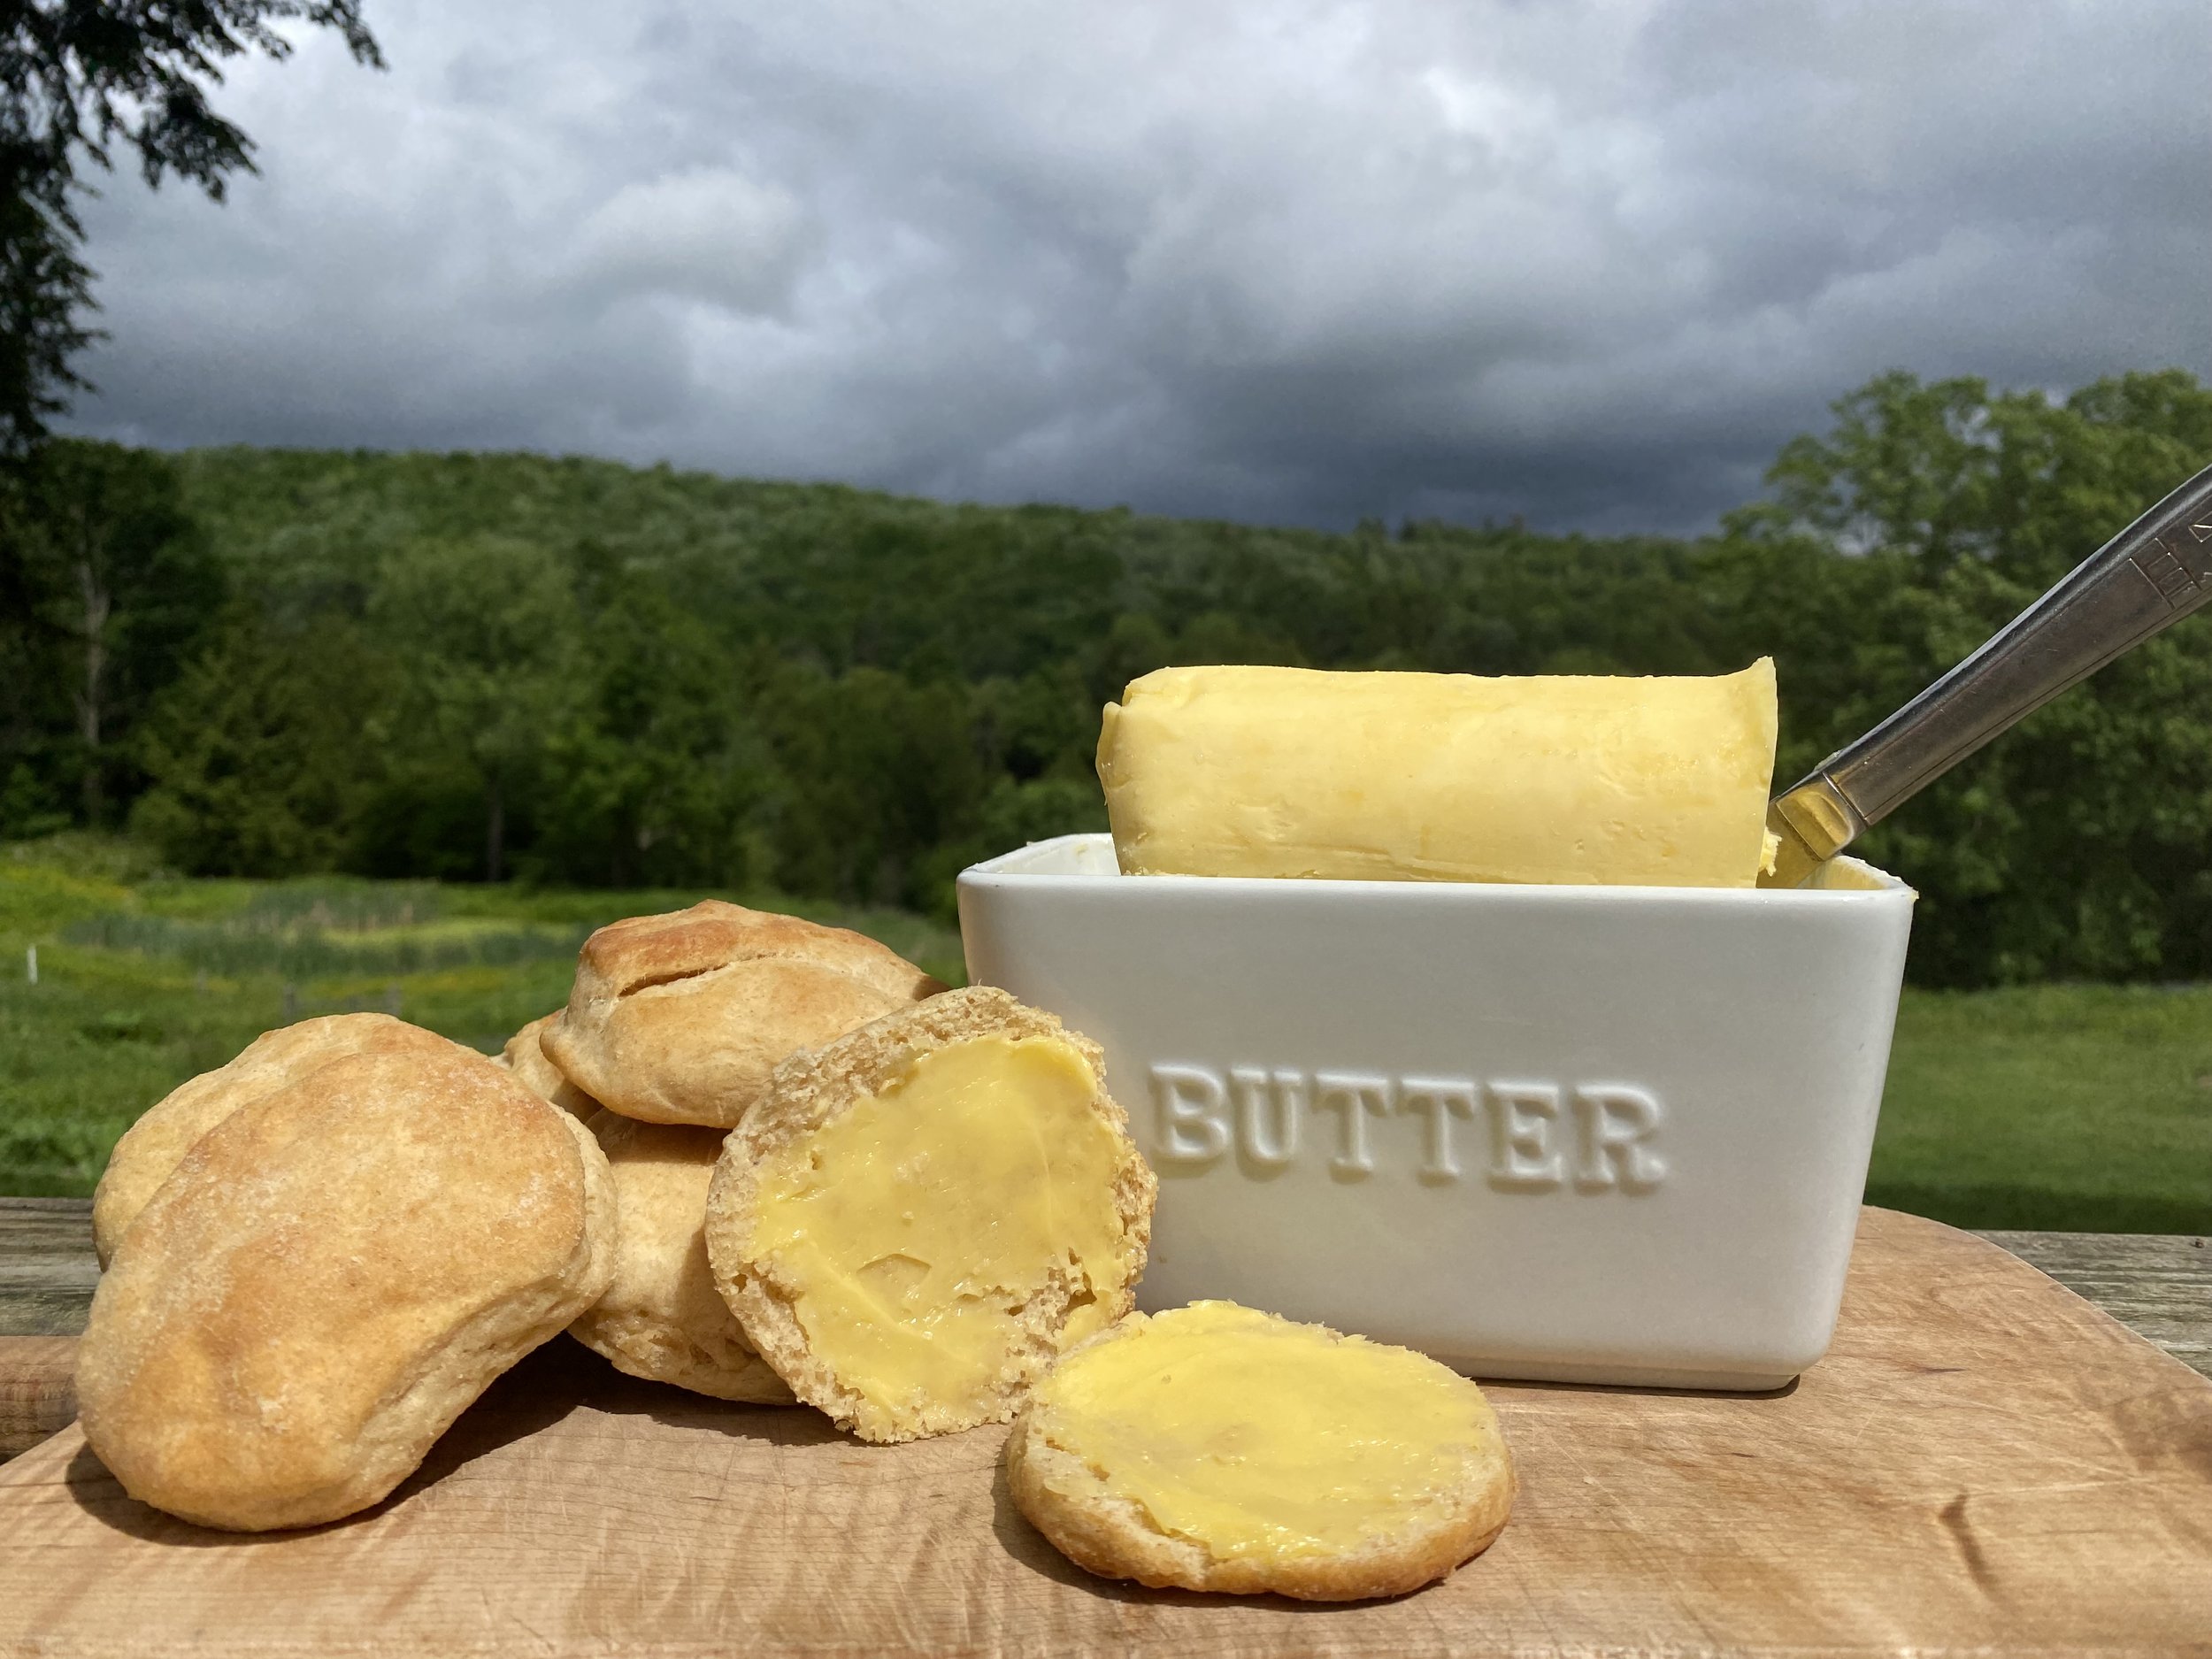 Butter pic outside.jpg